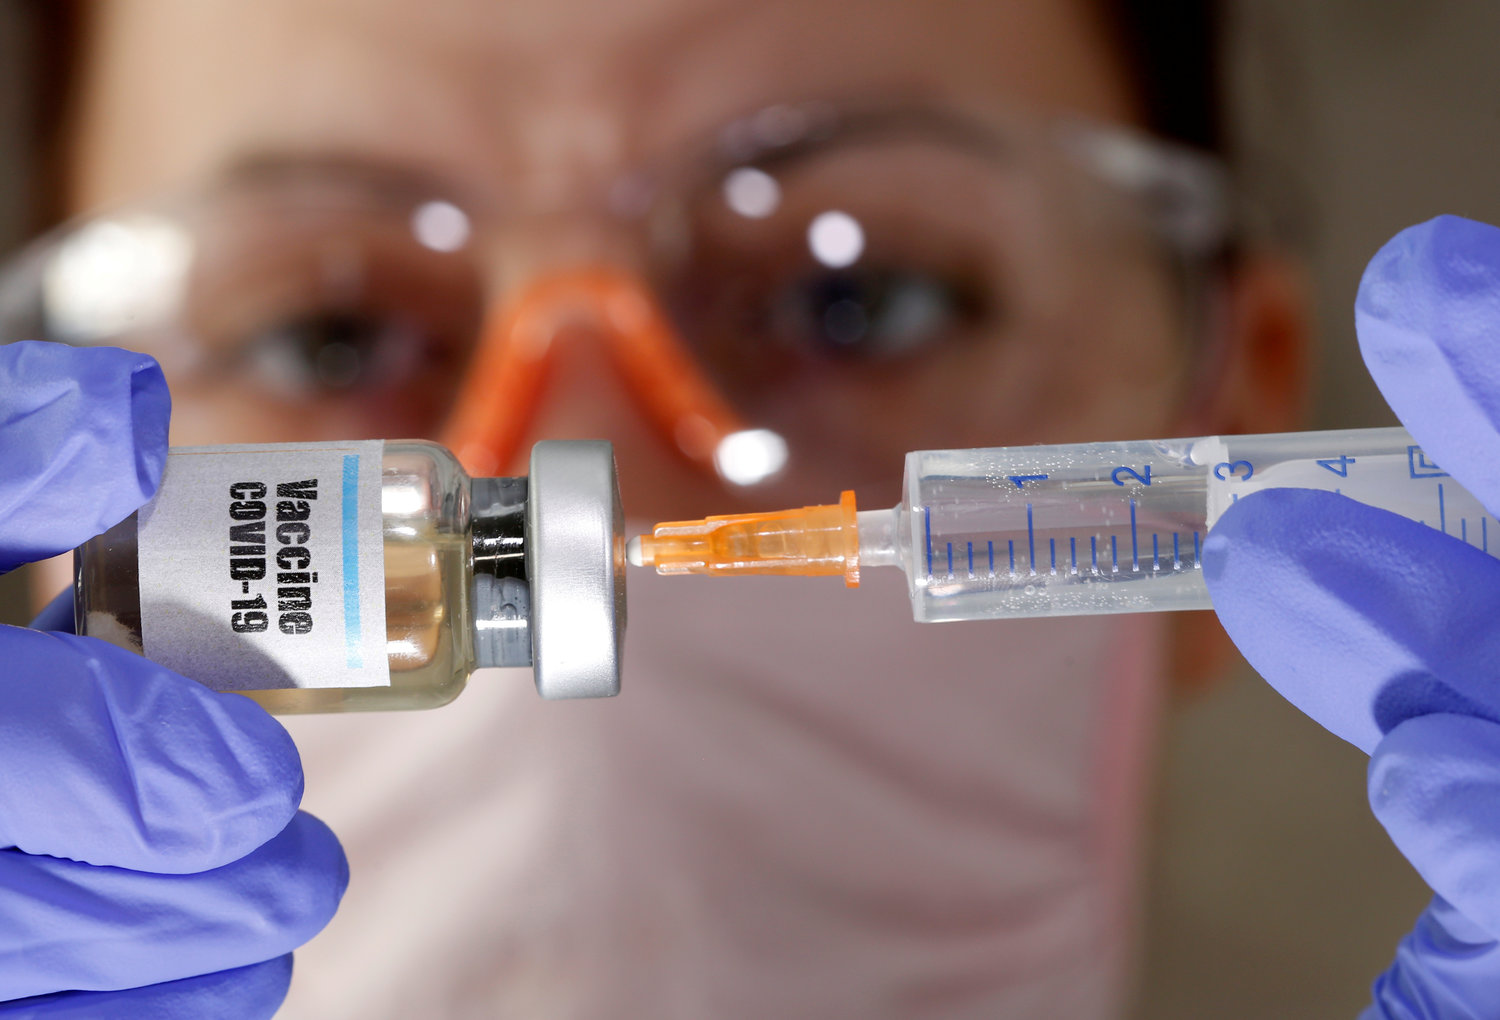 اللقاح الصيني فعال وآمن حسب بيانات التجارب السريرية